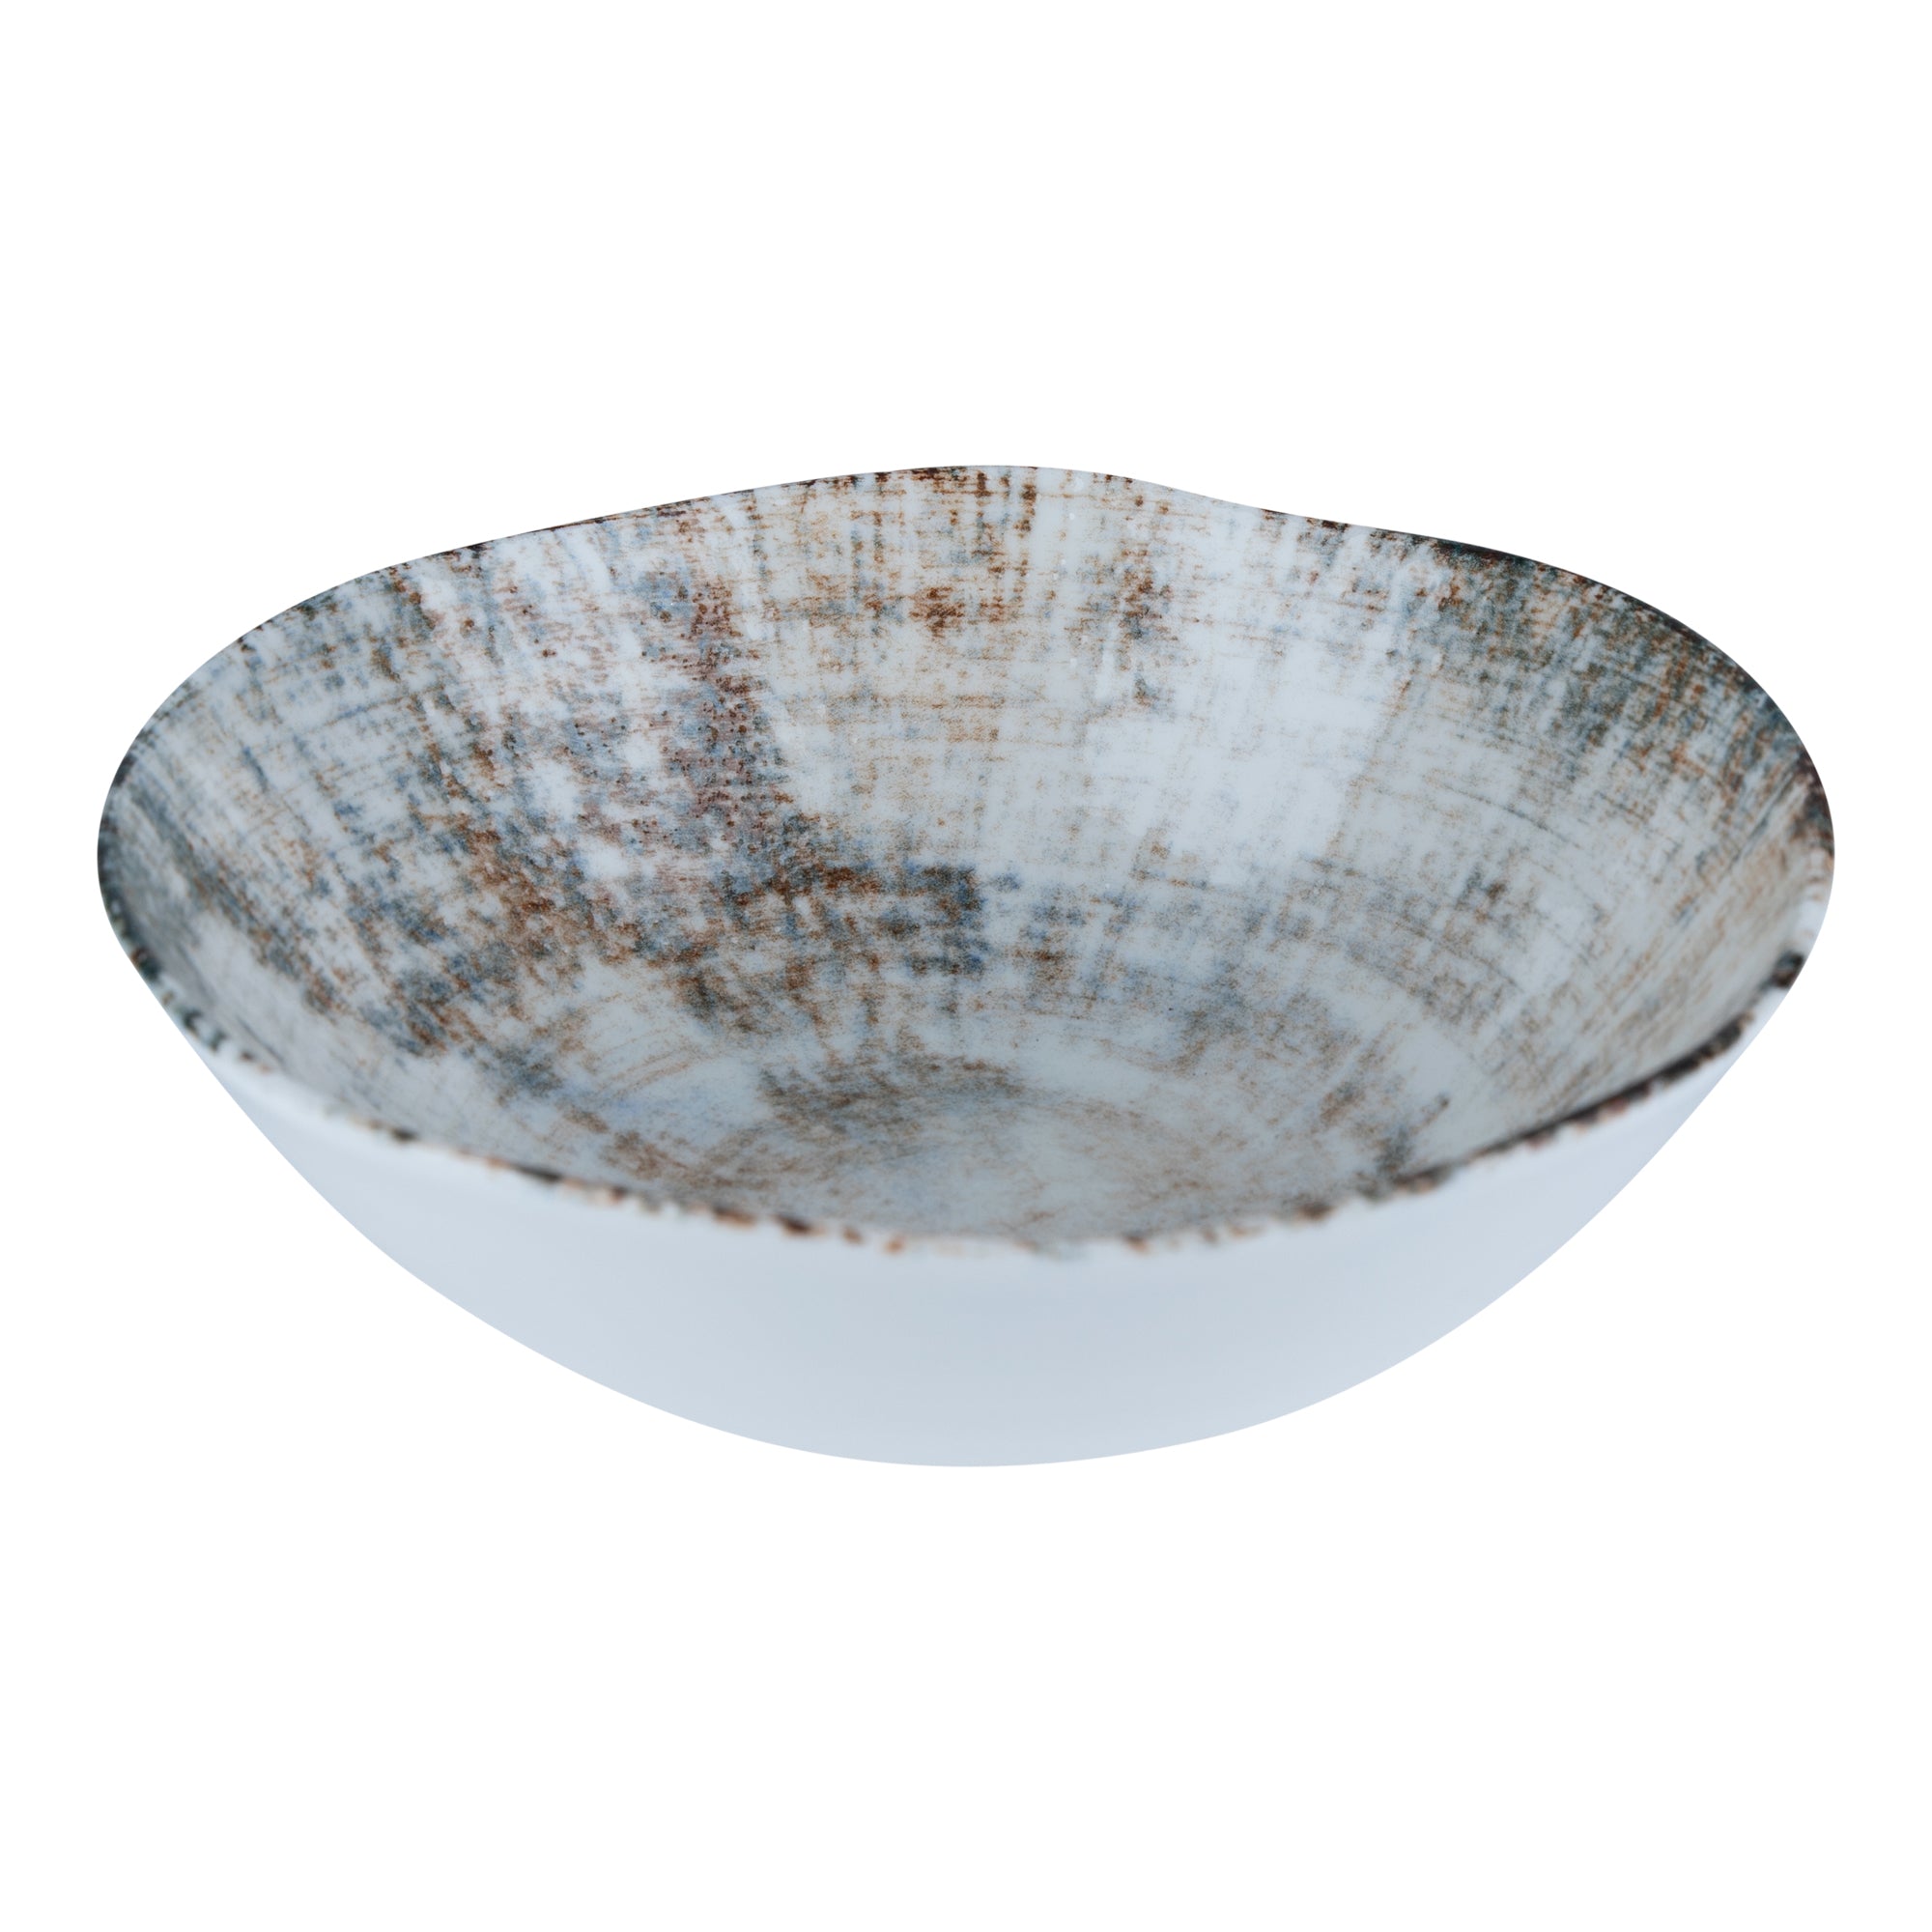 CERÁMICA |   Bowl porcelana redondo MIX BROWN